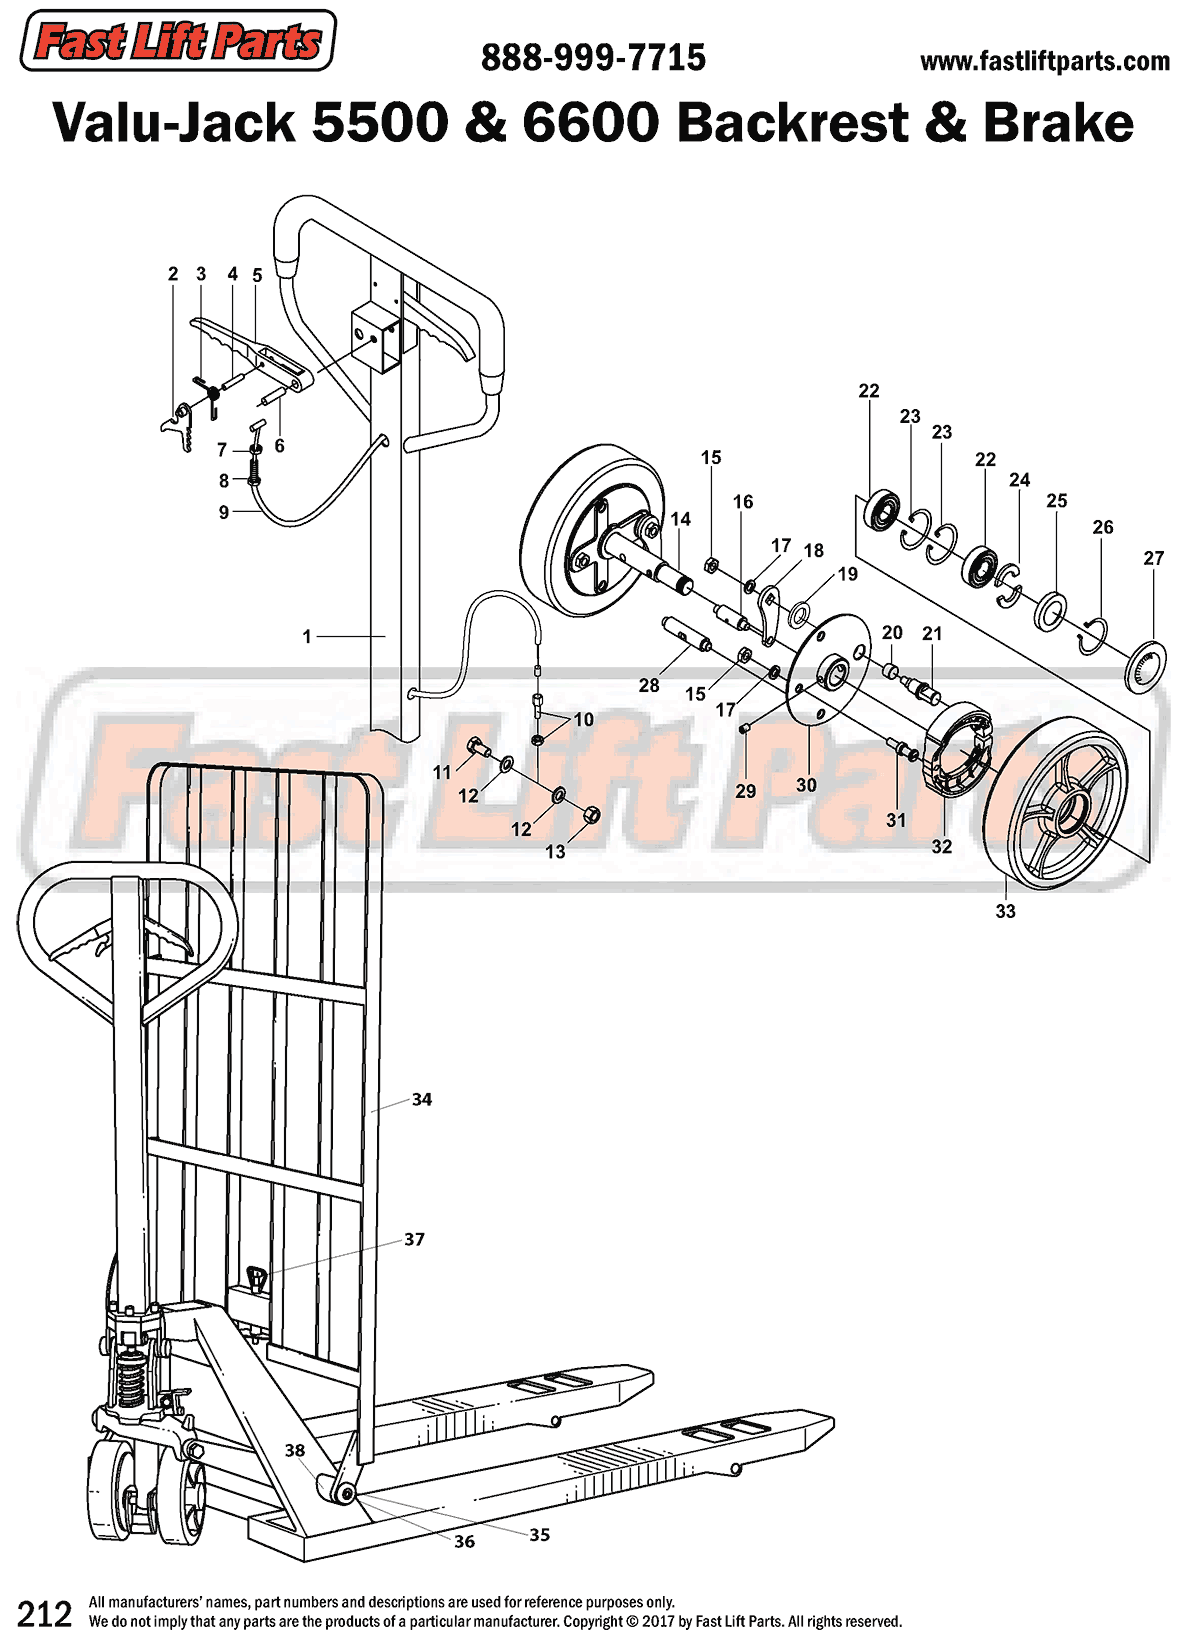 Valu-Jack 5500 & 6600 Backrest & Brake Line Drawing